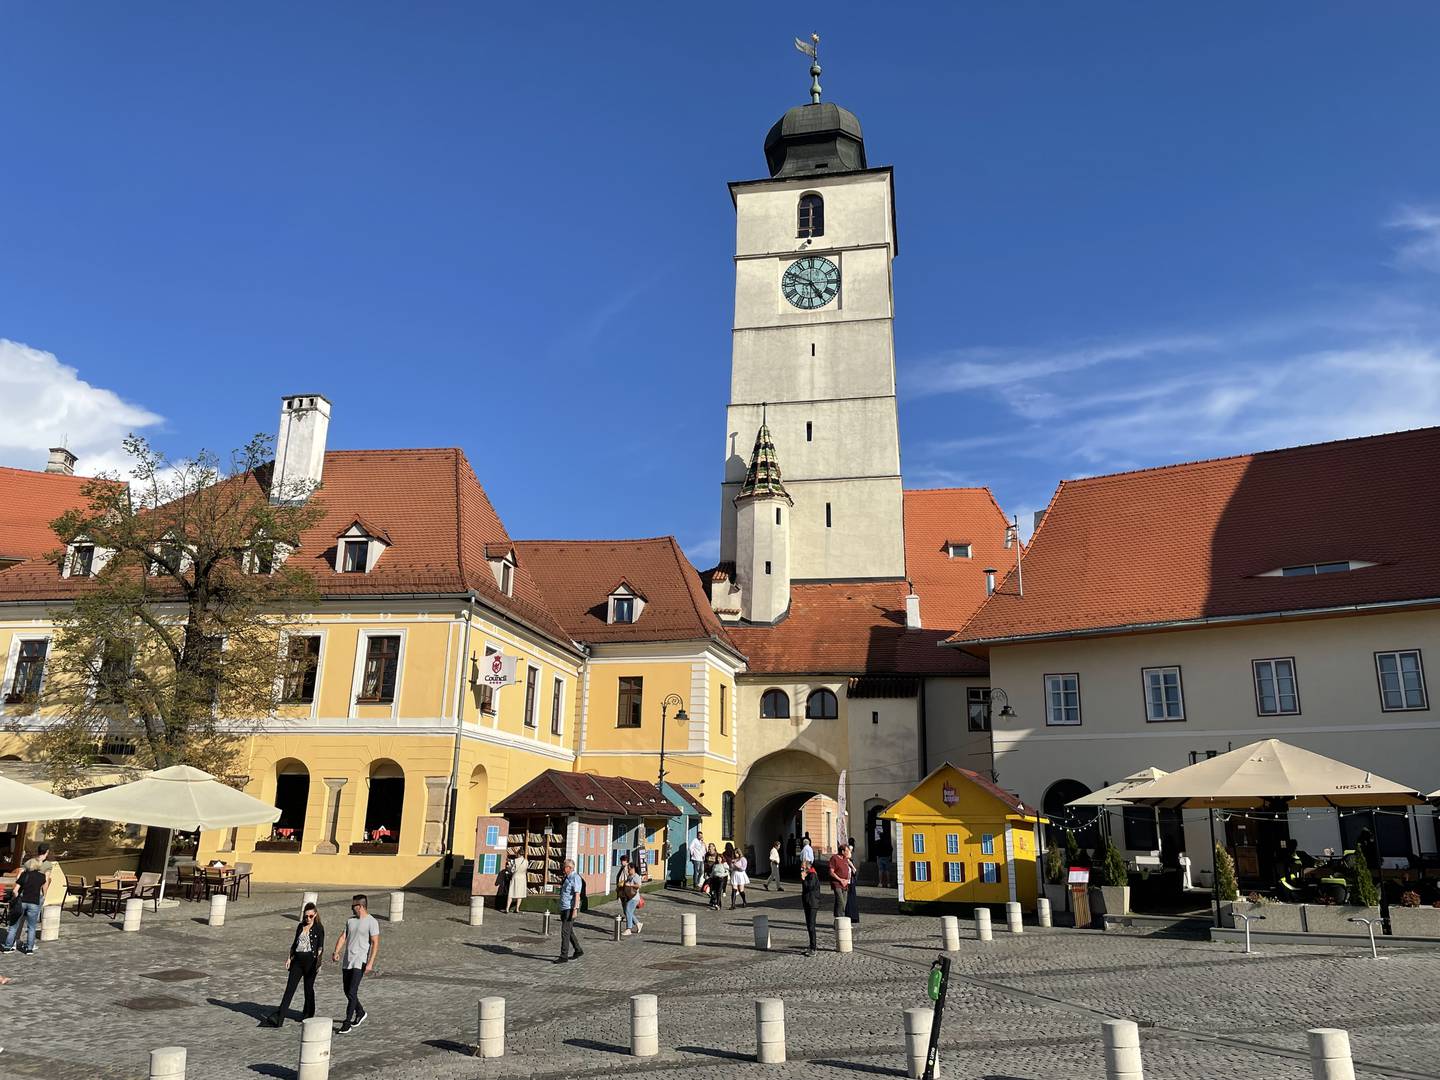 Este es una de las hermosas plazas en Sibiu, Rumanía.